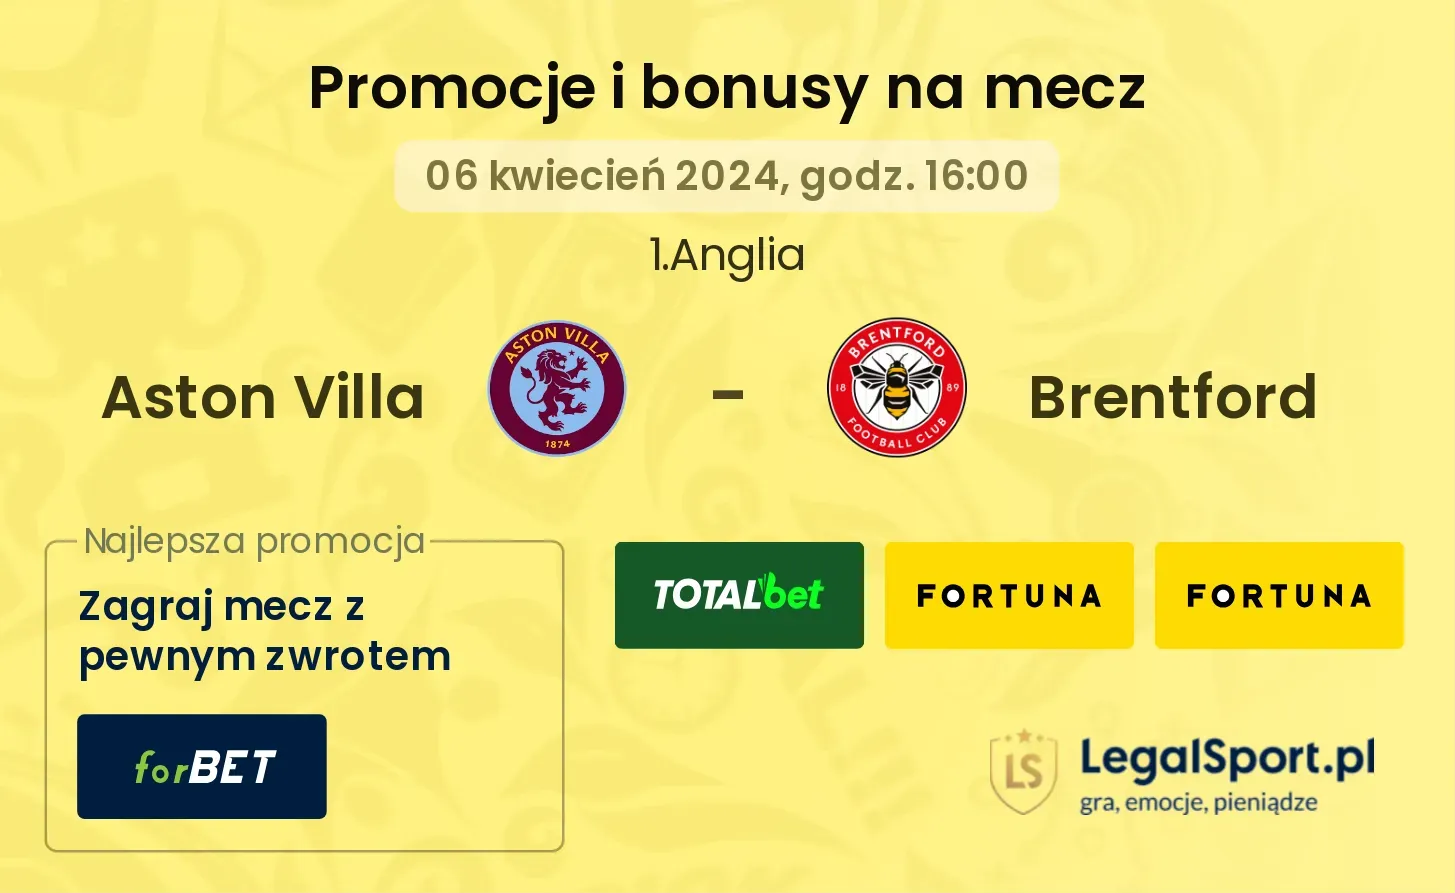 Aston Villa - Brentford promocje bonusy na mecz